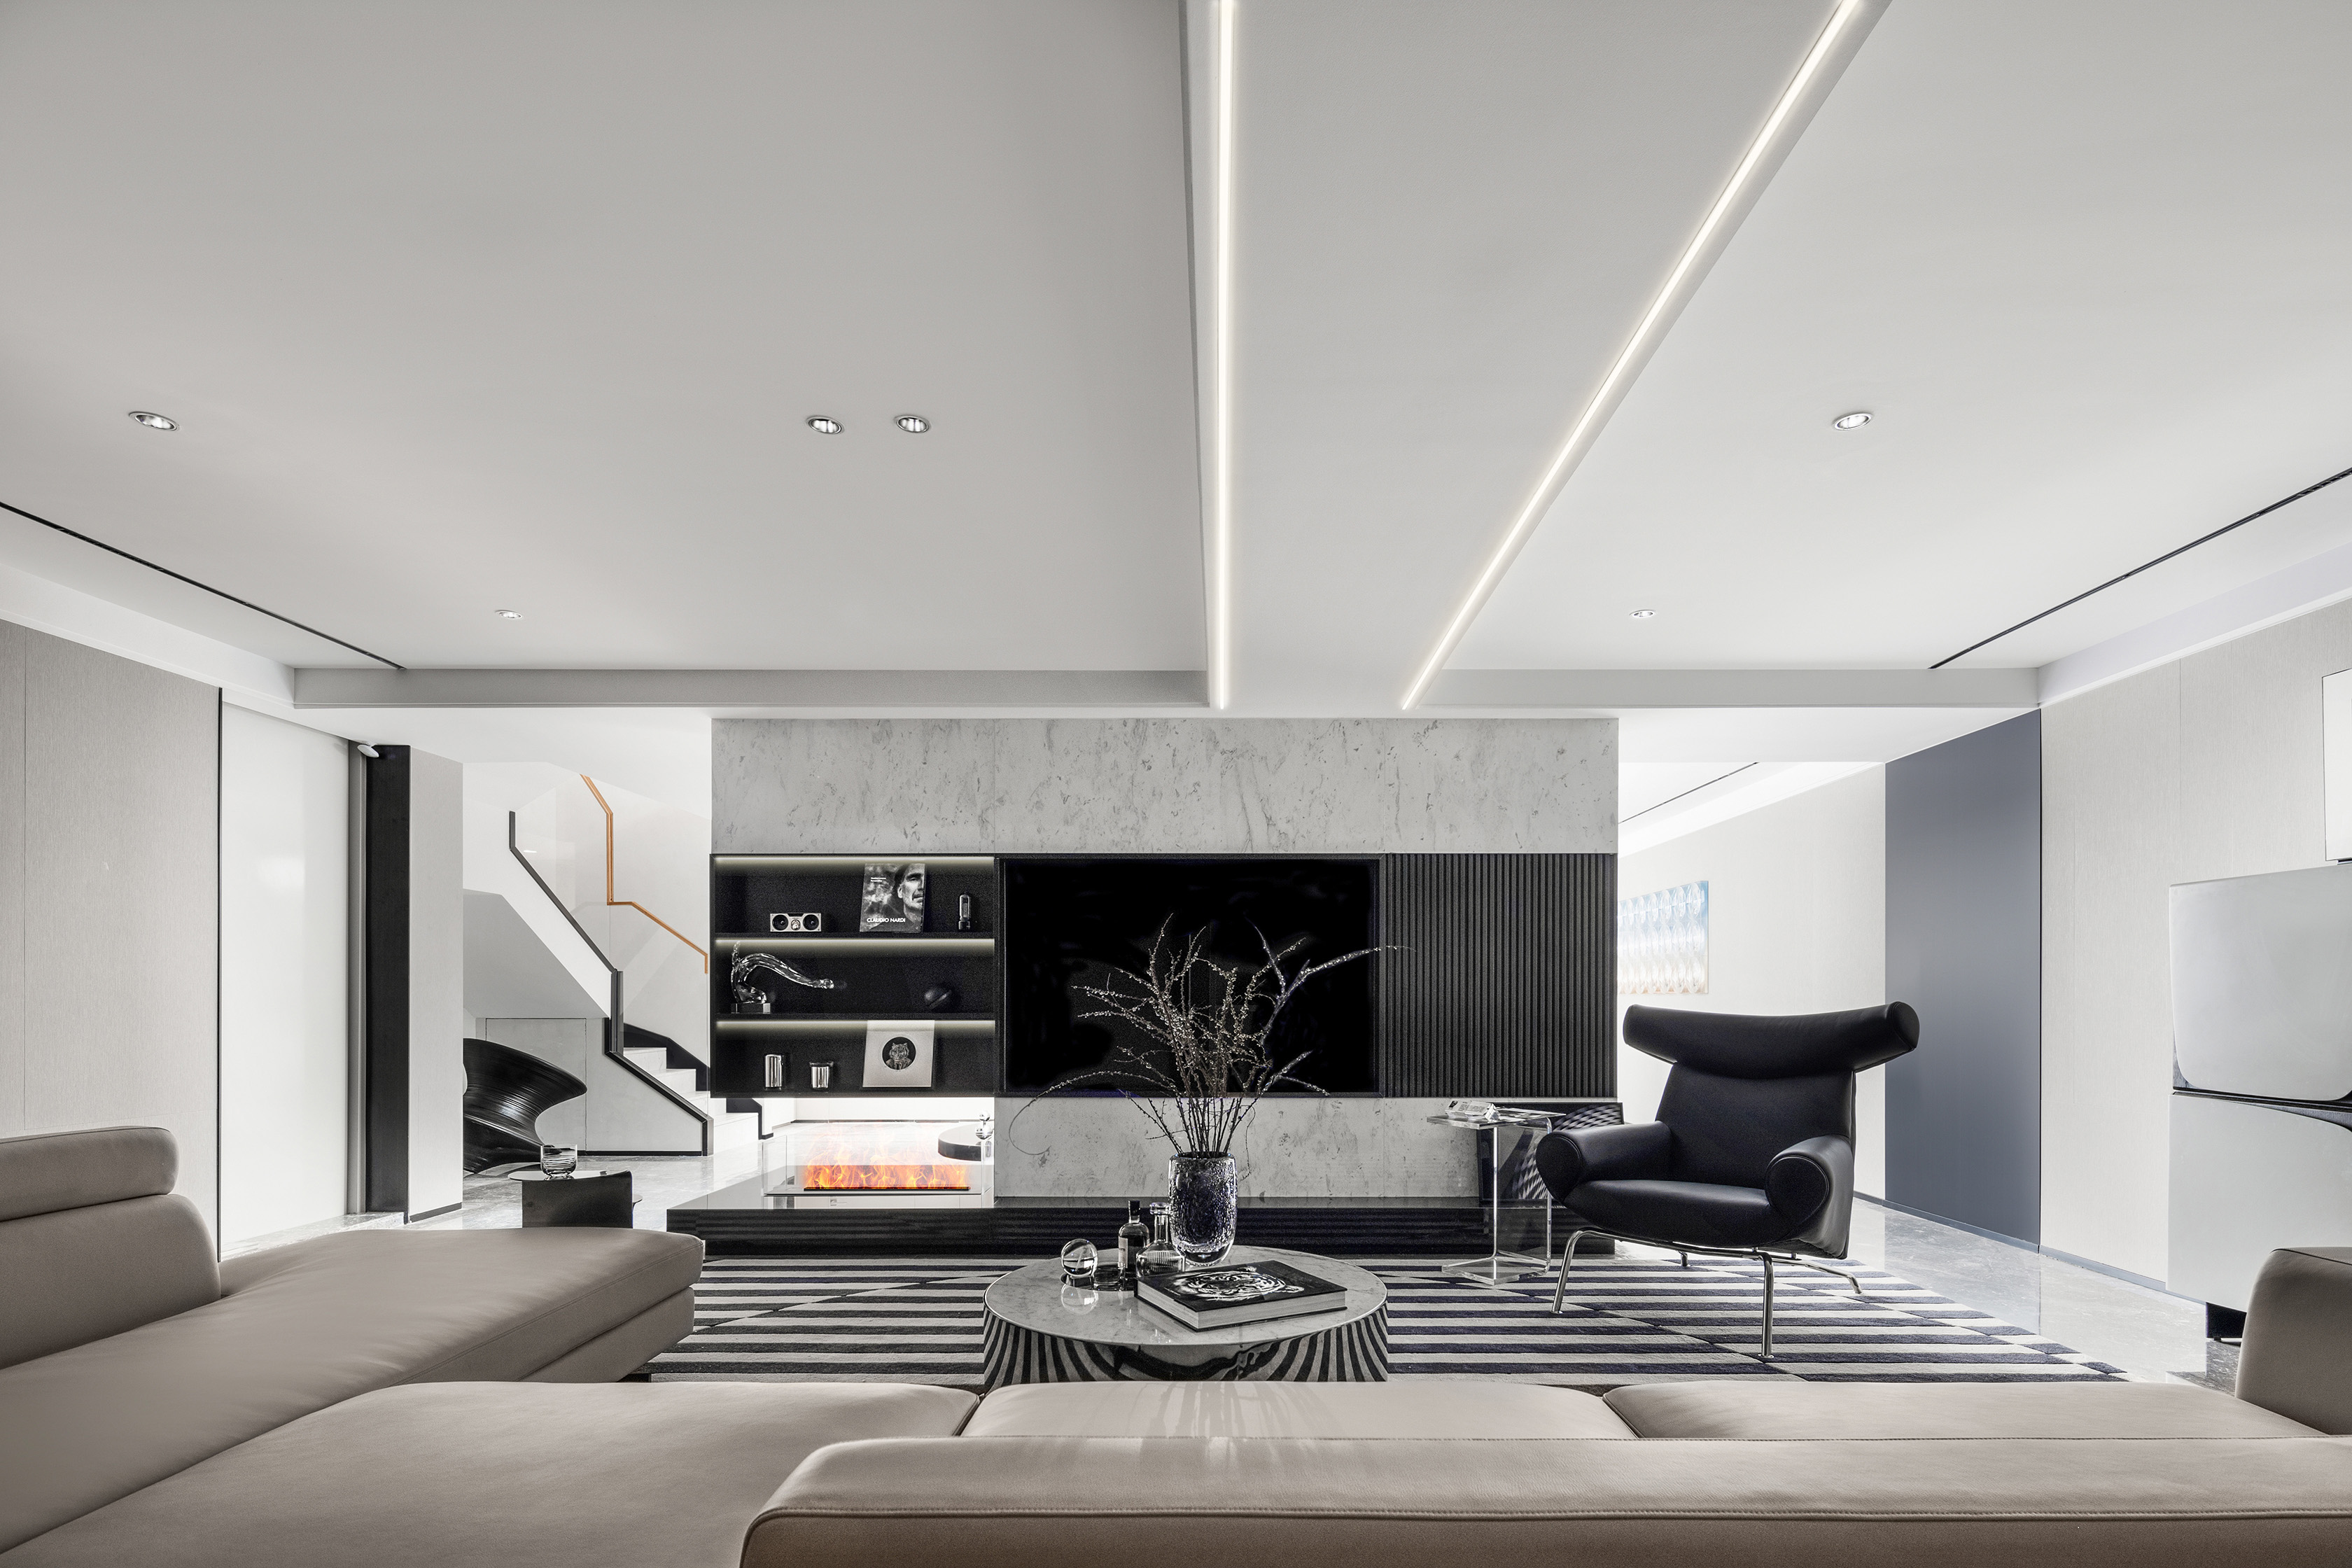 MUSE Design Winners - Jingcai Future Home Villa Project